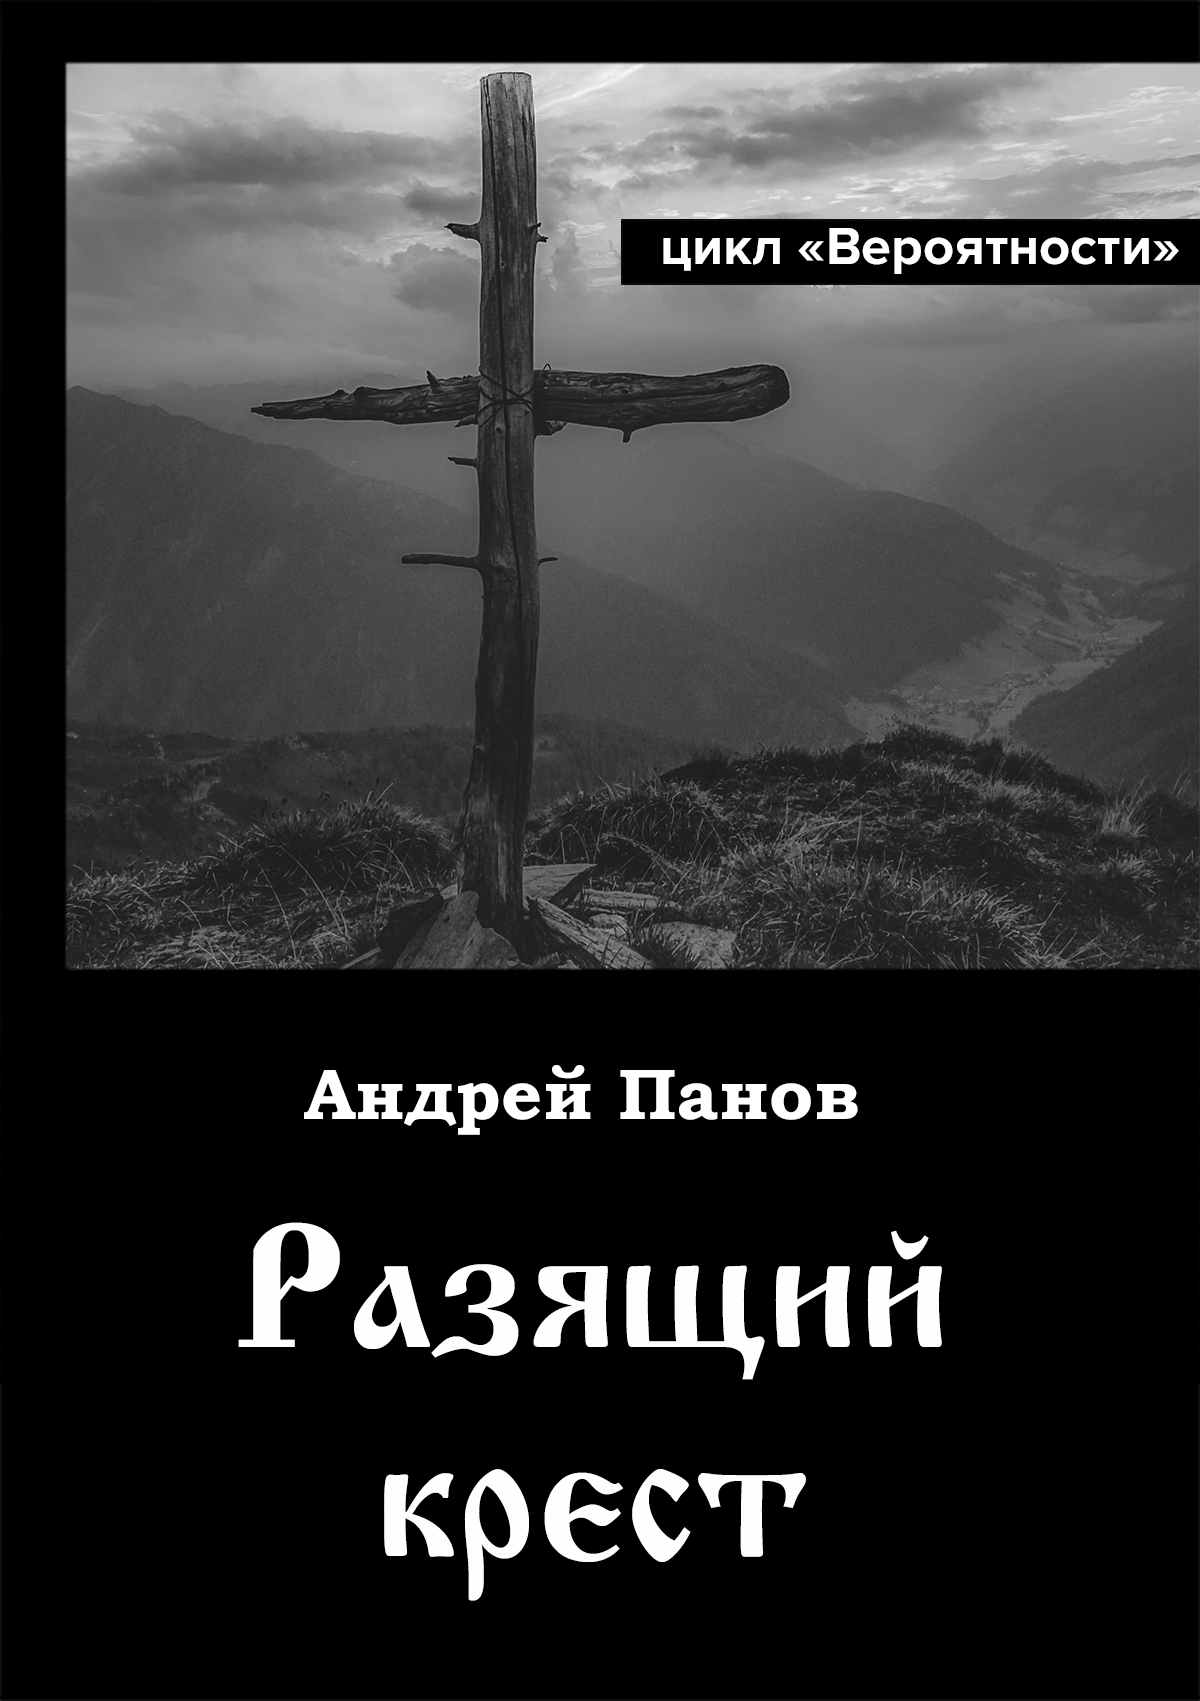 Андрей Панов «Разящий крест» (иллюстрация)